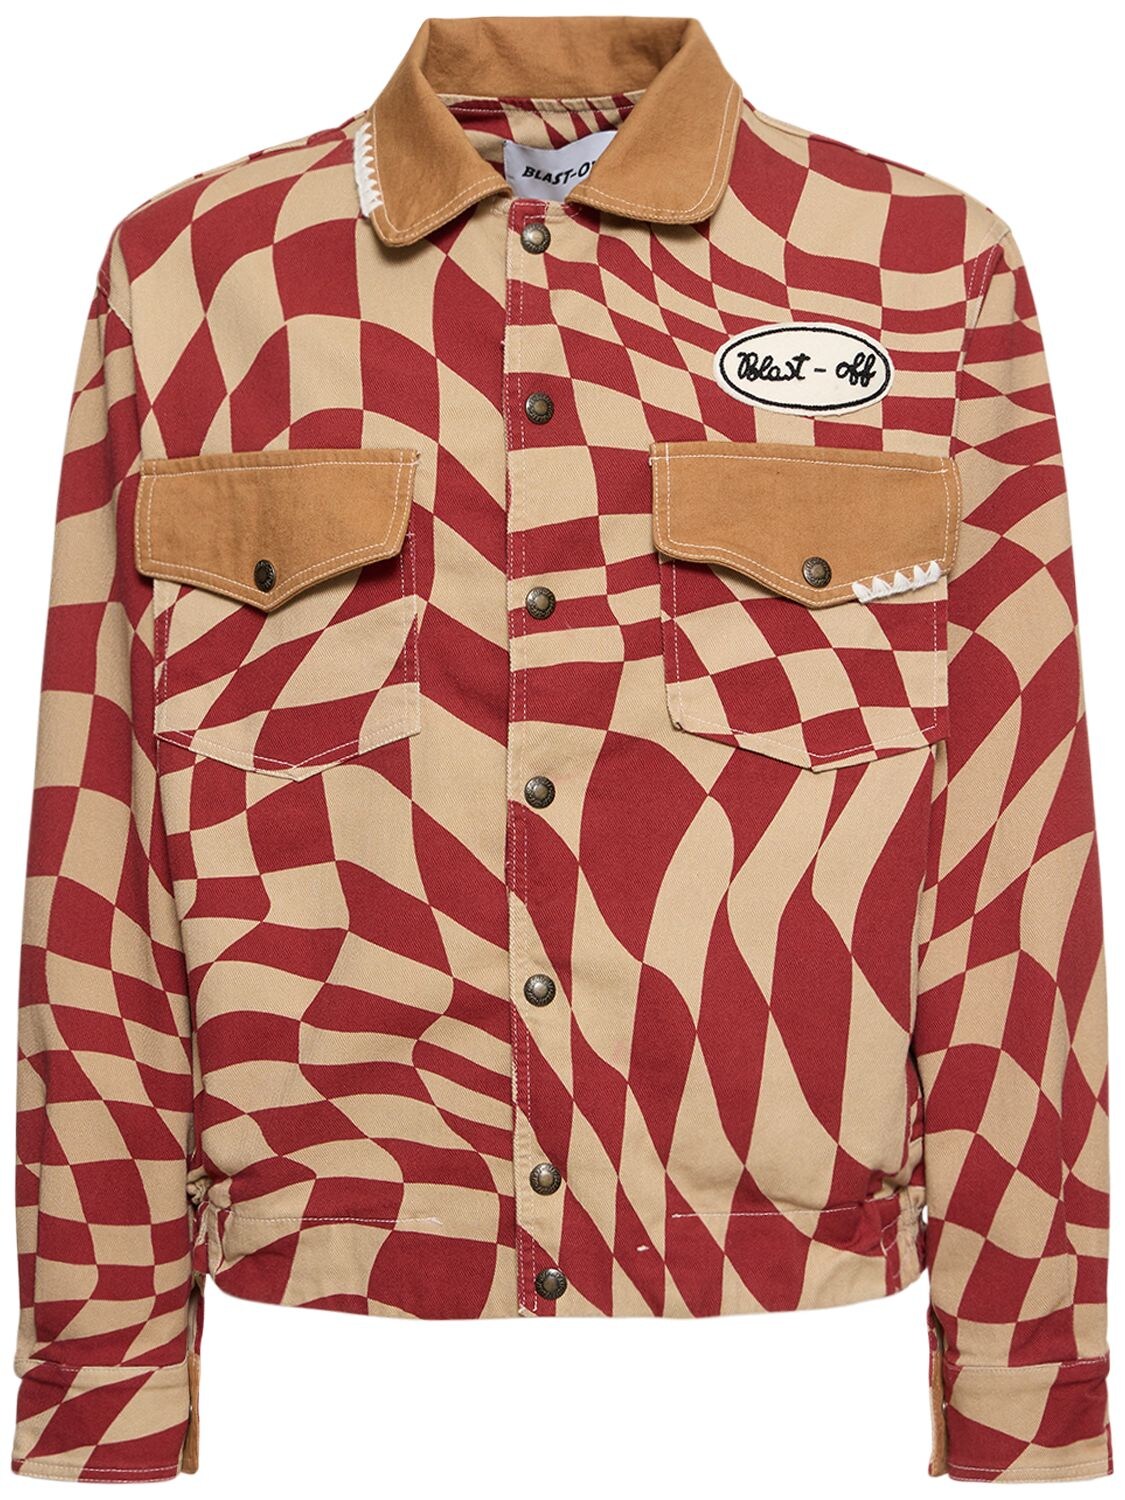 BLAST-OFF Denim Shirt Jacket W/ Square Motif